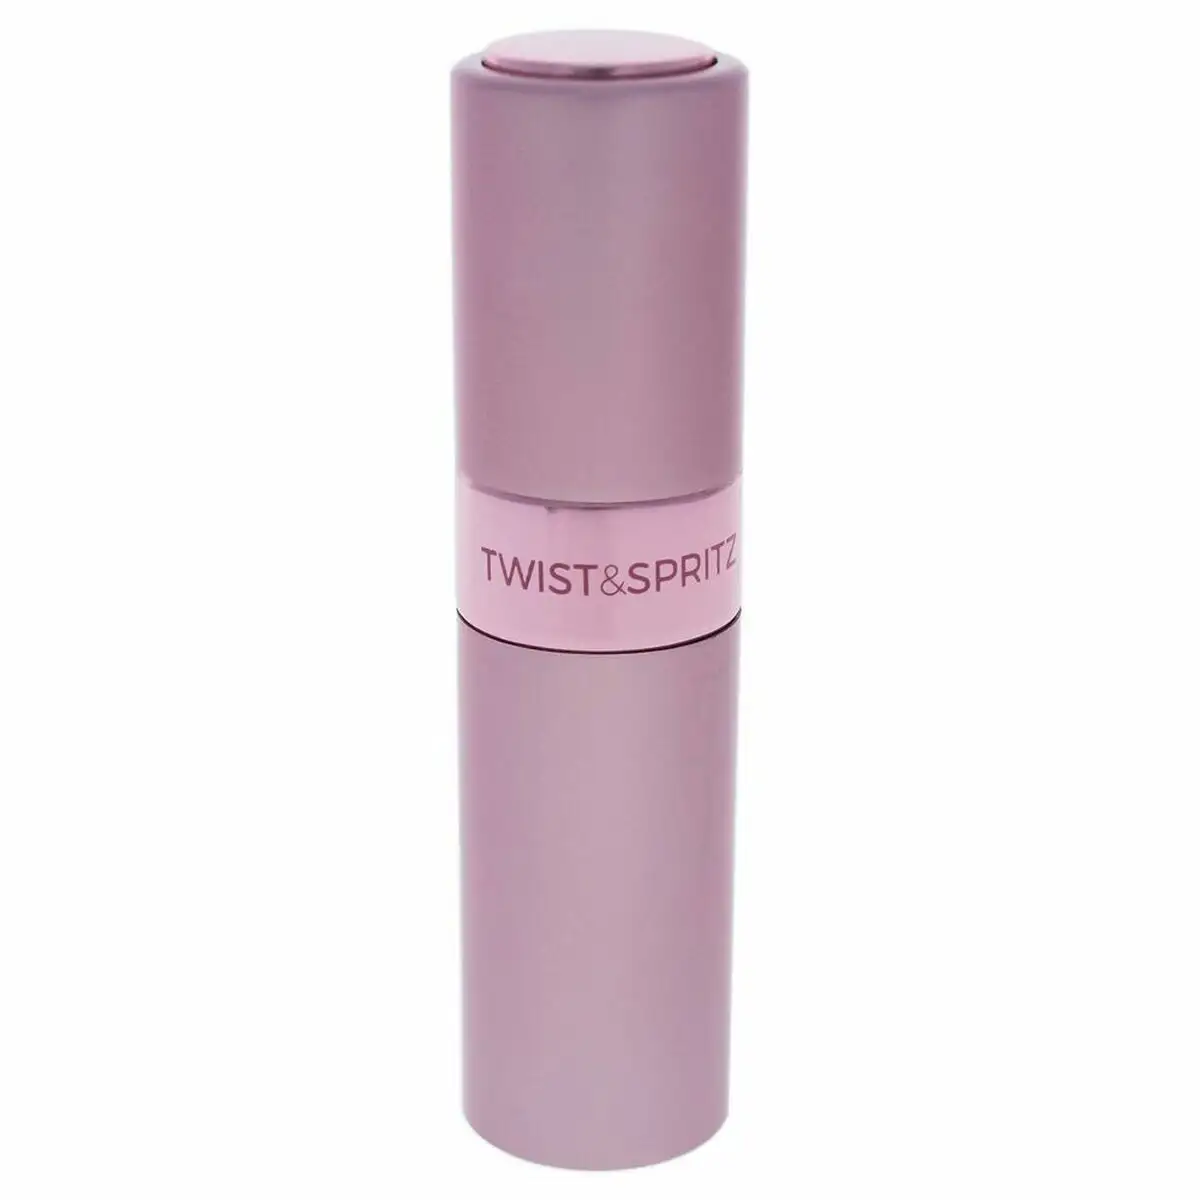 Atomiseur rechargeable twist spritz light pink 8 ml 8 ml _8993. DIAYTAR SENEGAL - Où Choisir est un Plaisir. Explorez notre boutique en ligne et choisissez parmi des produits de qualité qui satisferont vos besoins et vos goûts.